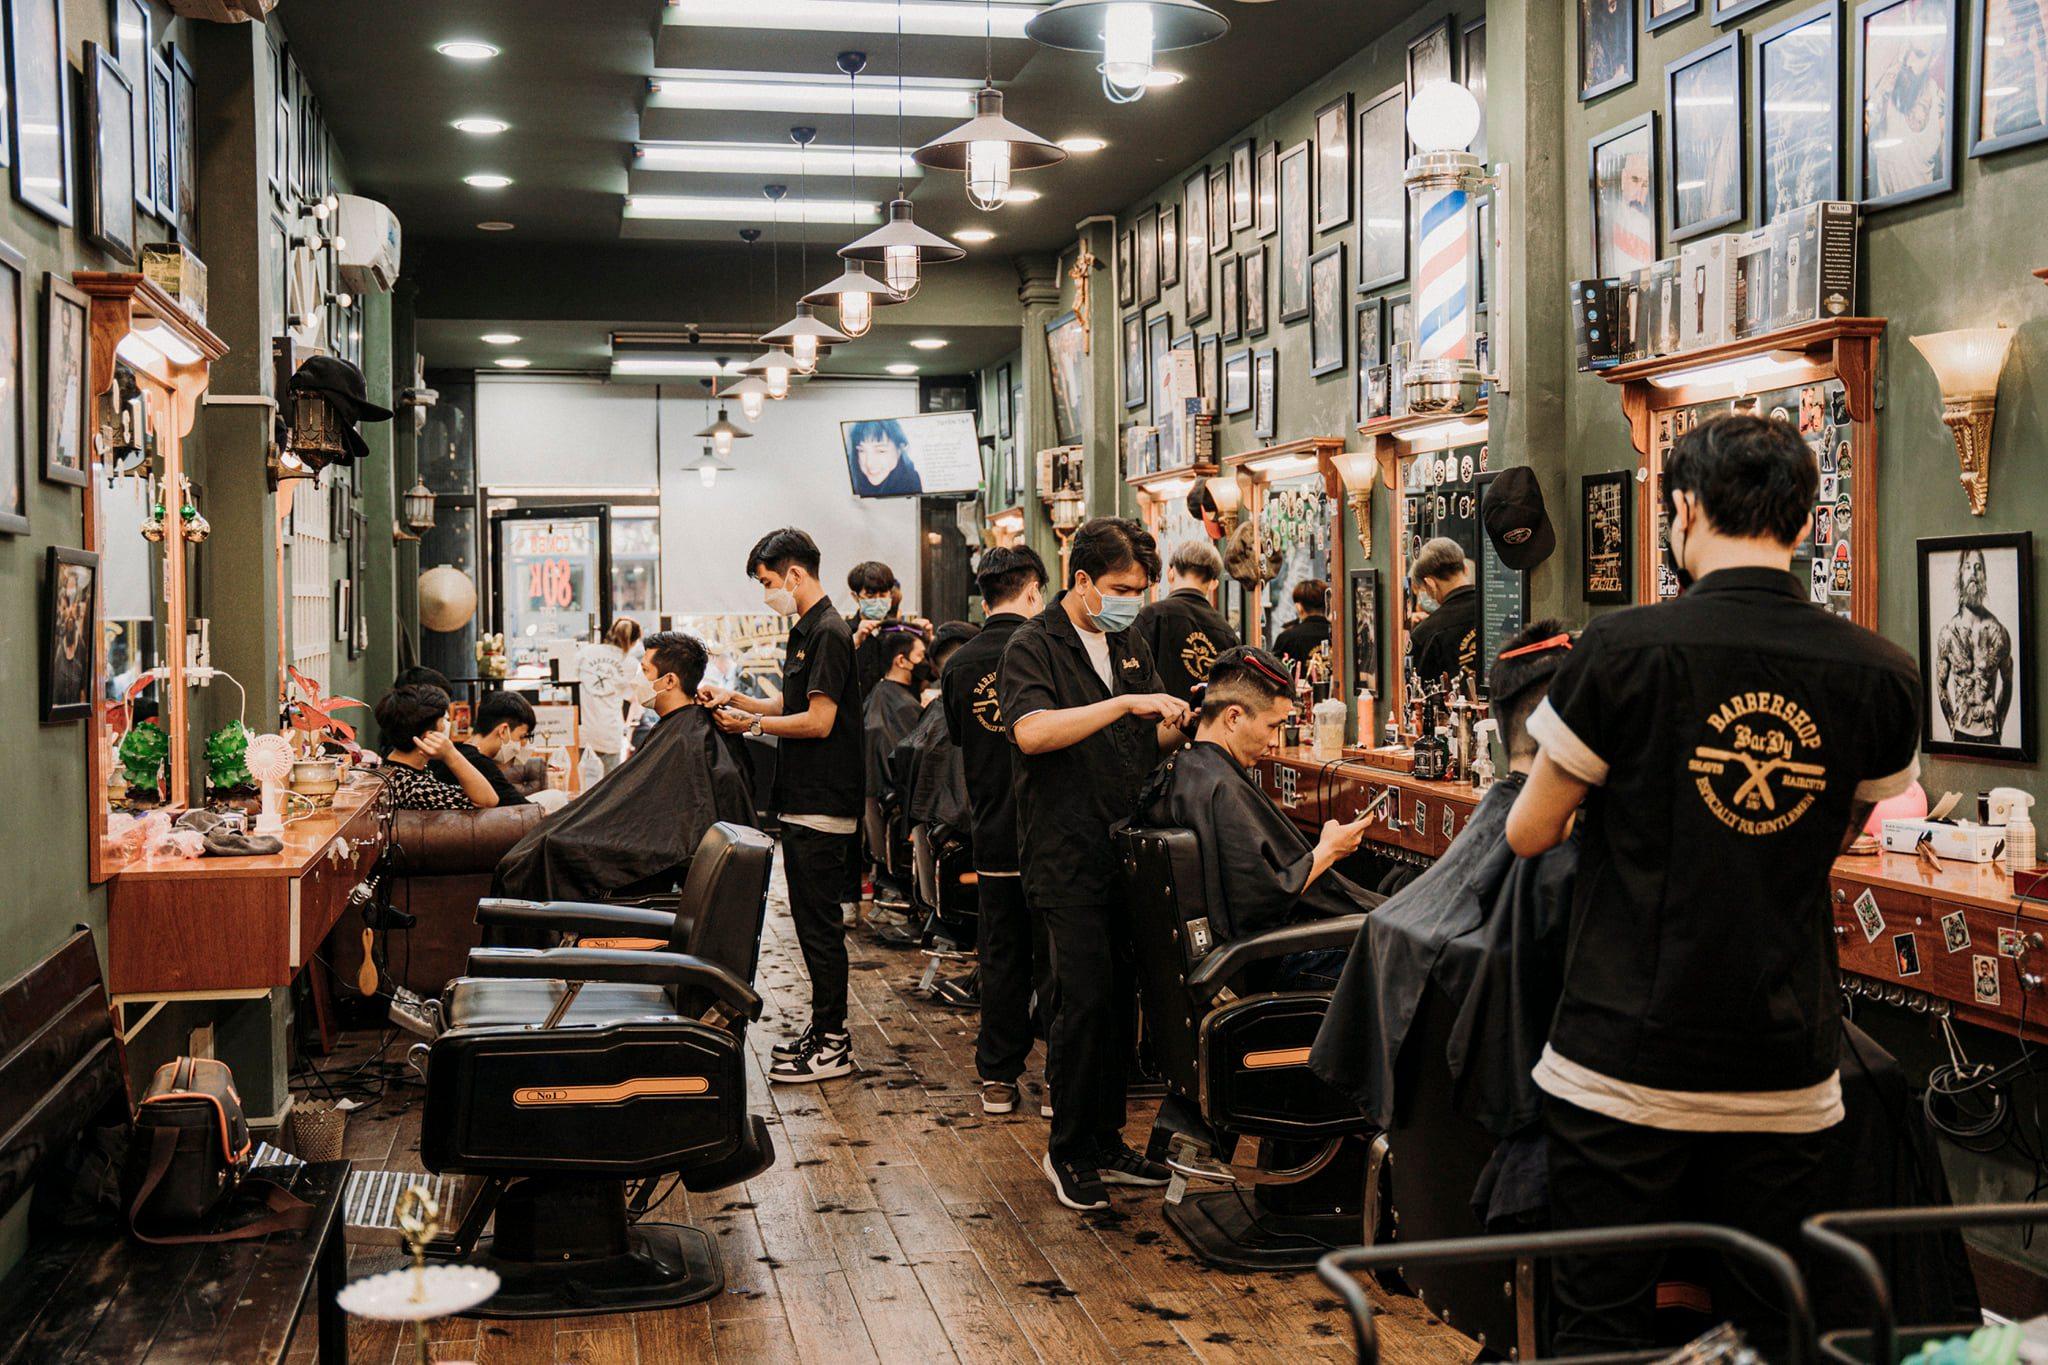 Nếu bạn đang khó chọn một tiệm cắt tóc nam quận 3 chuyên nghiệp thì hãy để chúng tôi giúp bạn. Chúng tôi có đầy đủ kinh nghiệm và trang thiết bị hiện đại để mang đến kiểu tóc ưng ý cho bạn. Hãy ghé thăm cửa hàng của chúng tôi ngay hôm nay.